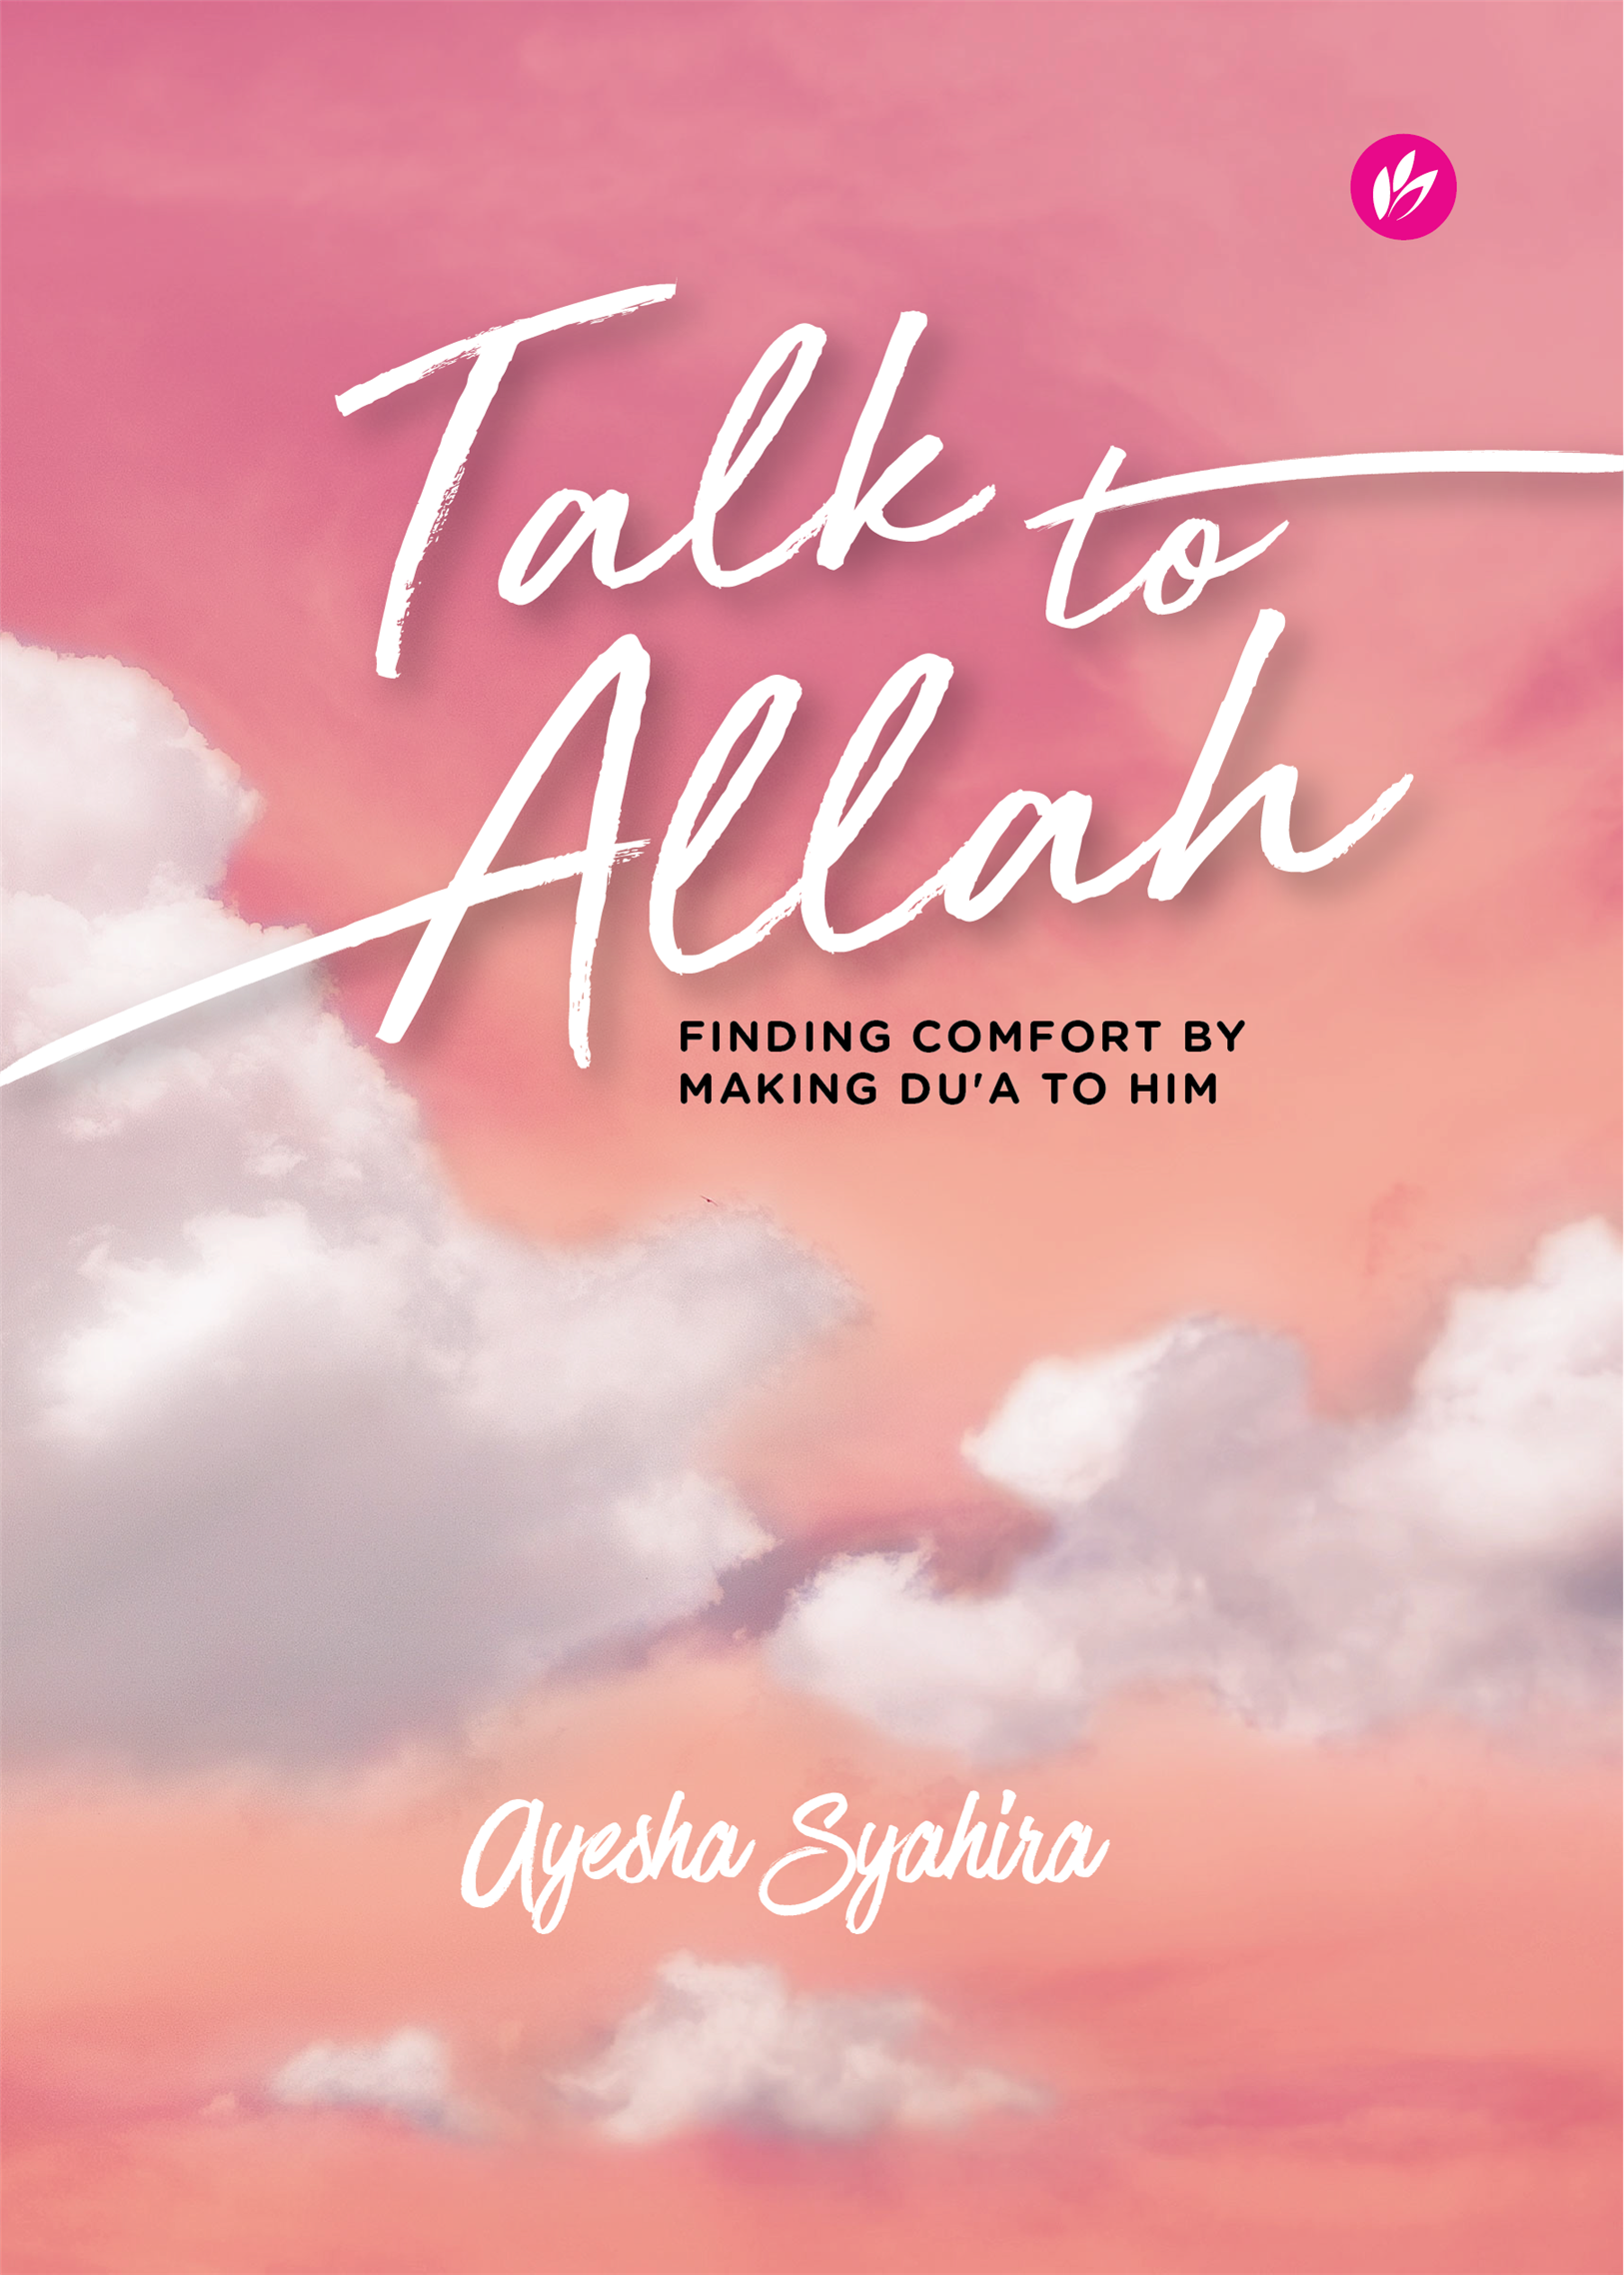 Talk to Allah Ayesha Syahira